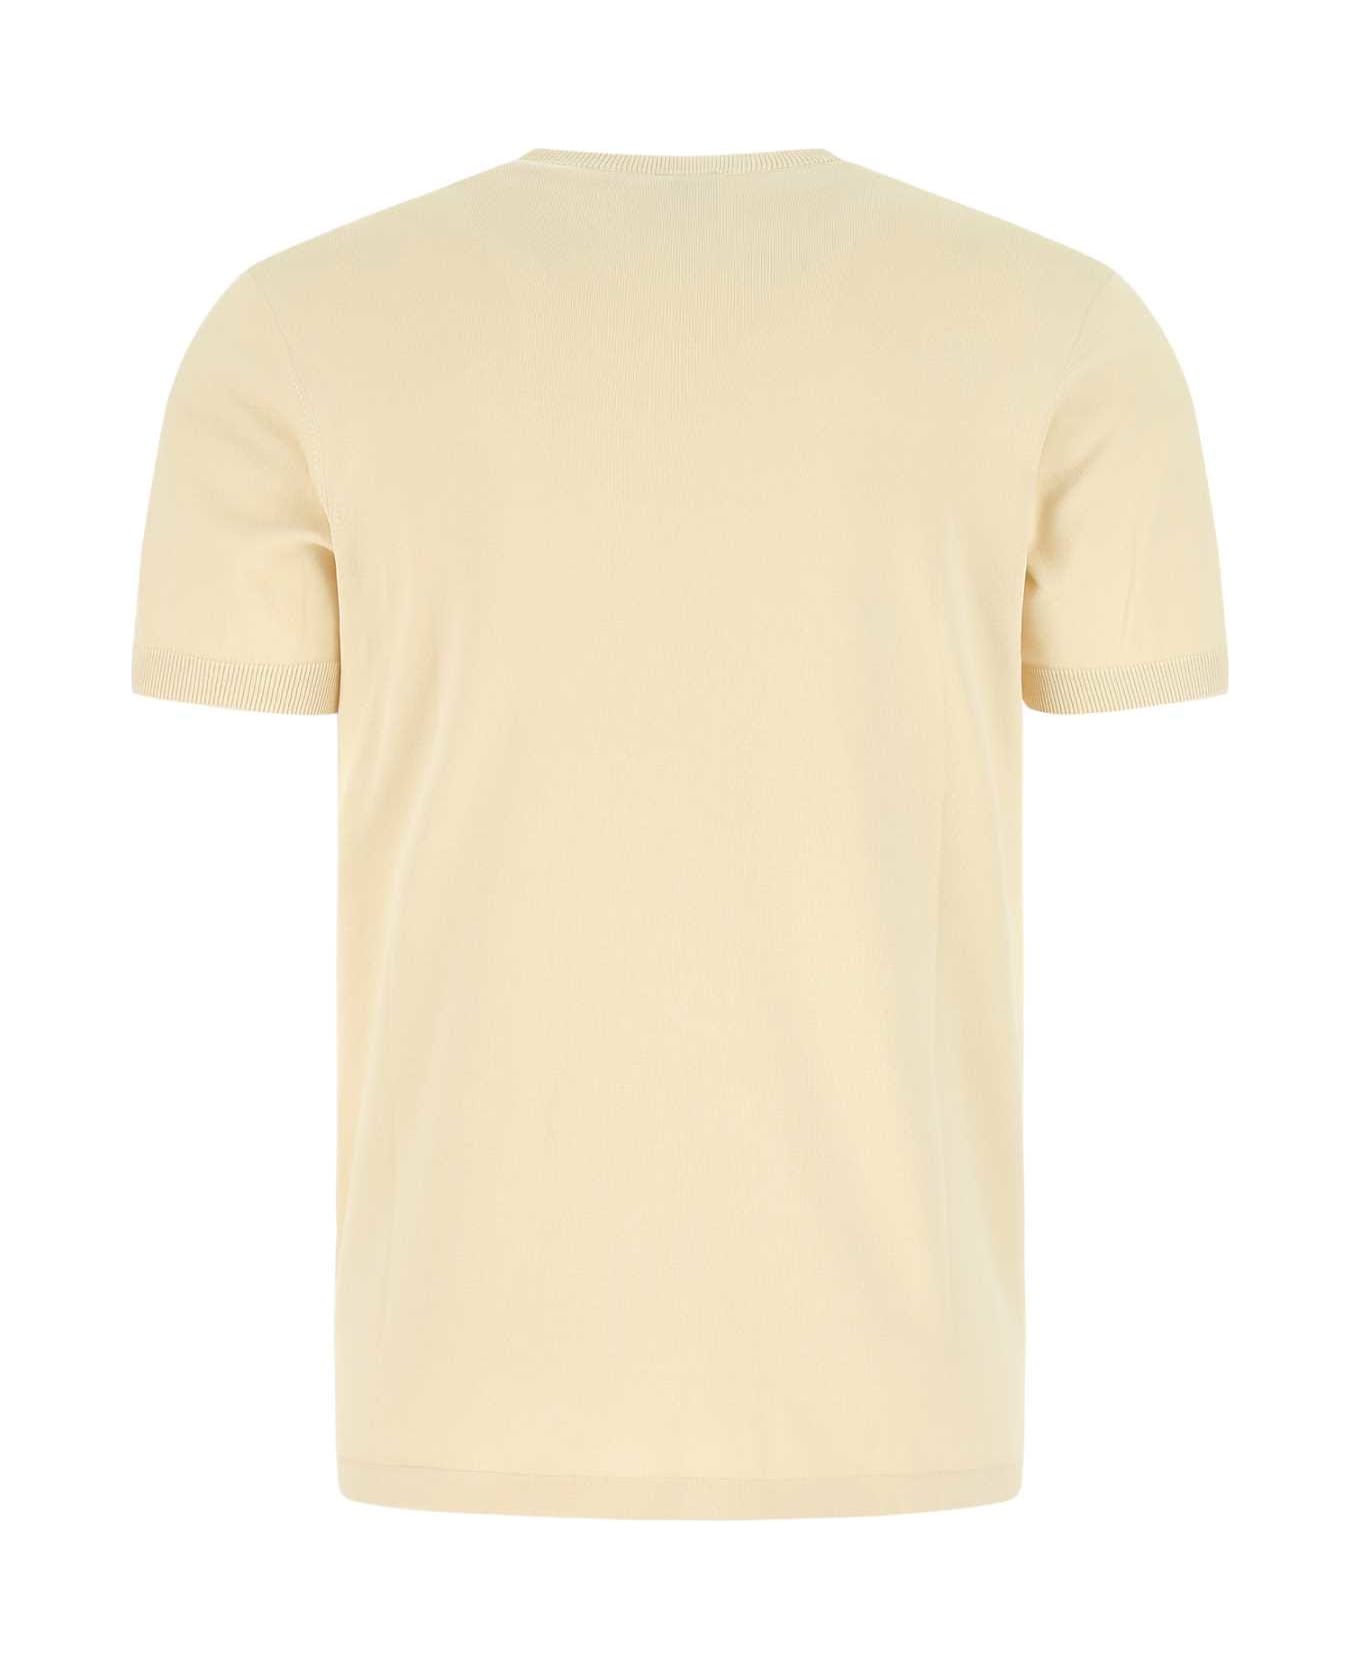 Aspesi Sand Cotton T-shirt - 01043 シャツ